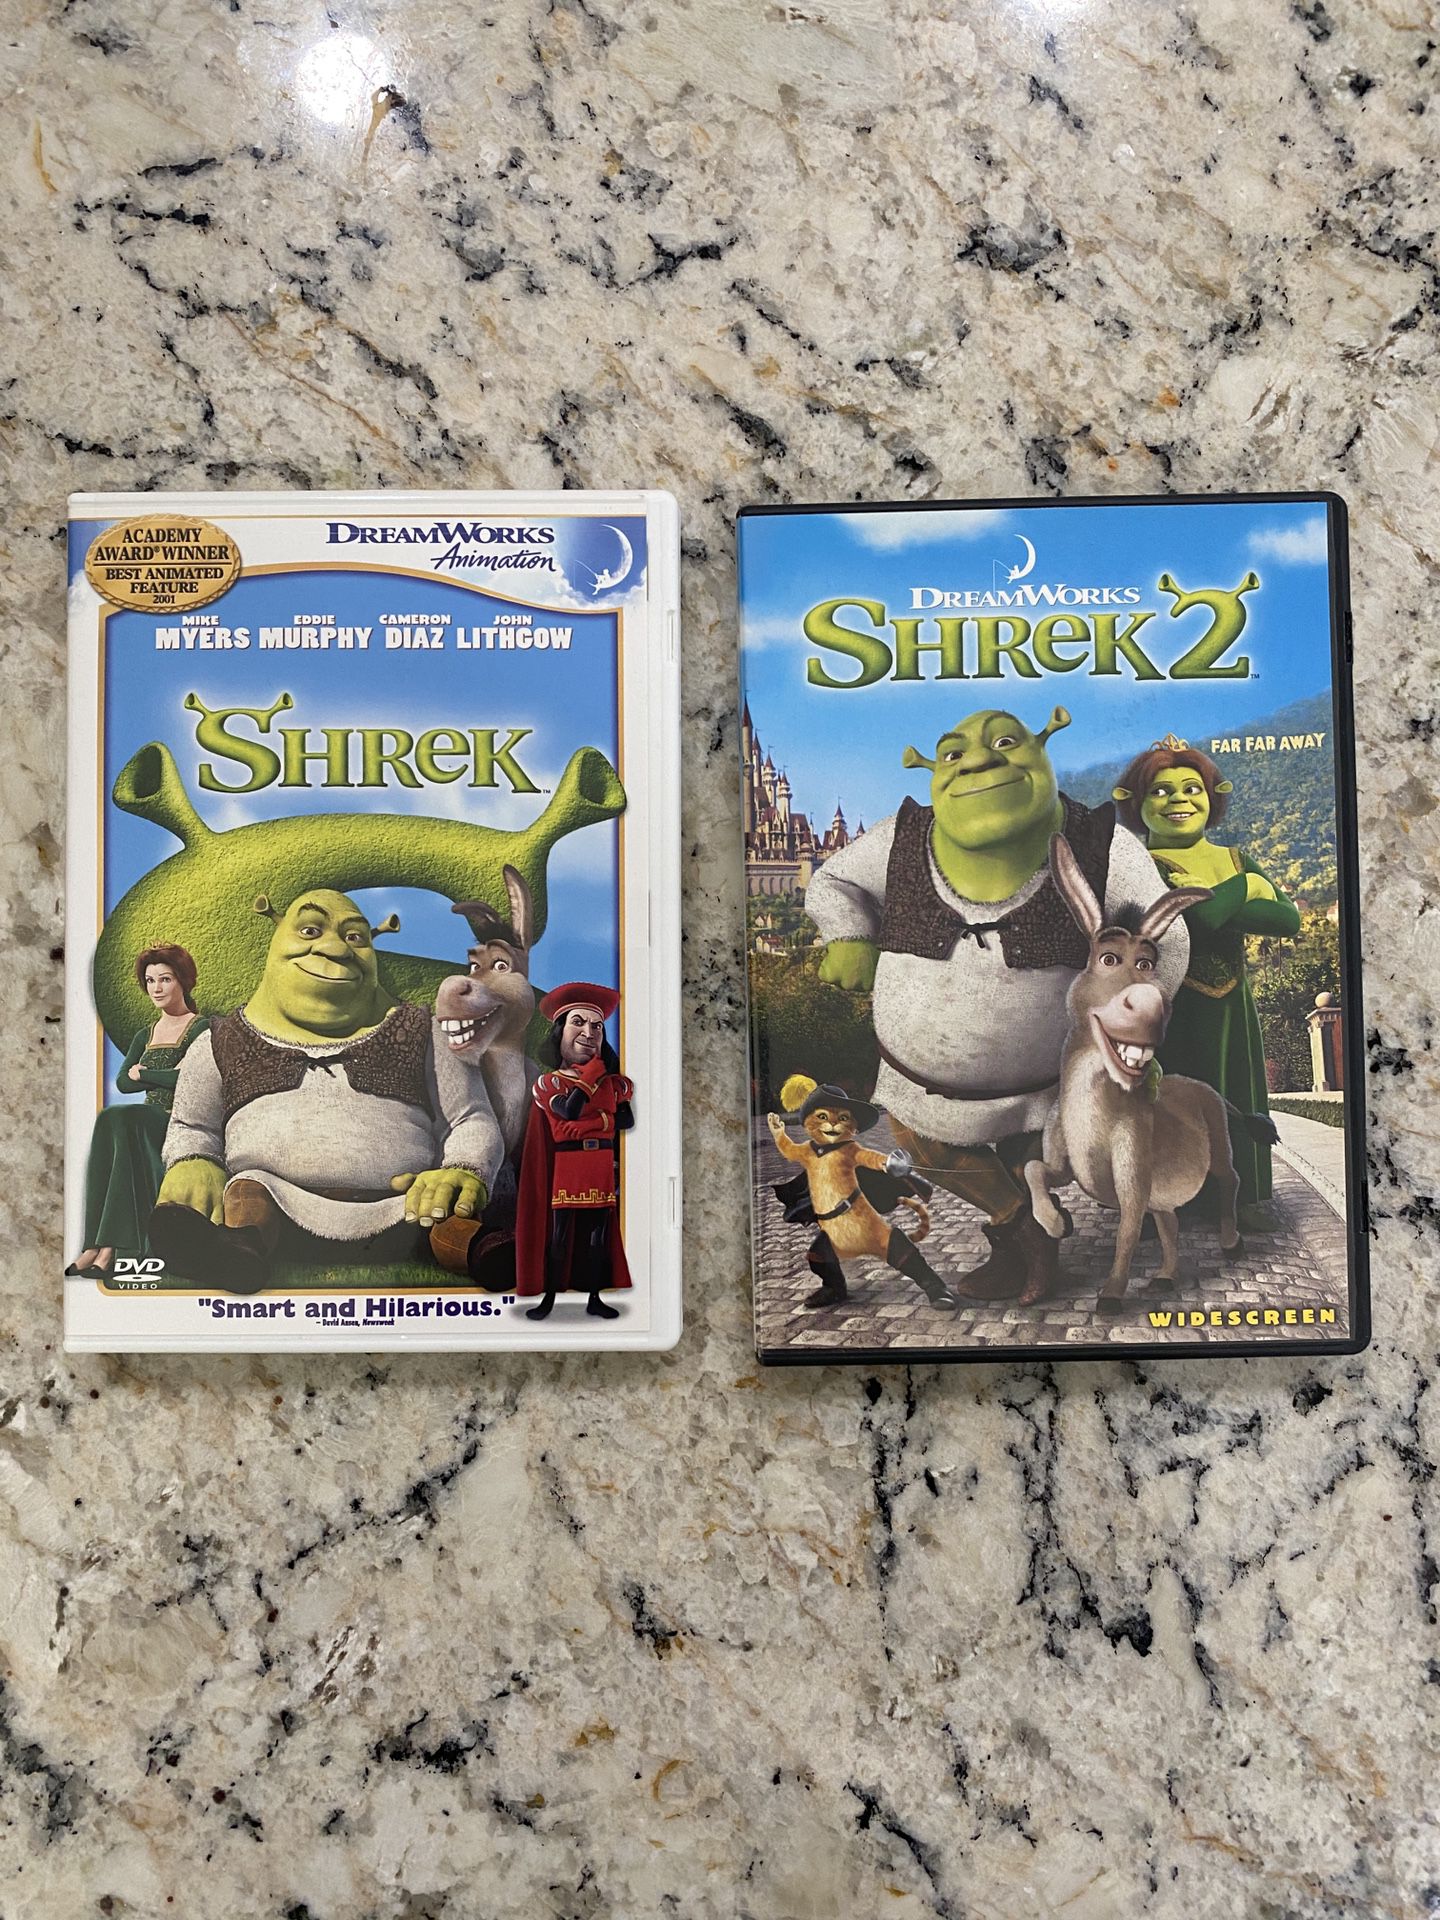 Shrek 1 & 2 DVDs